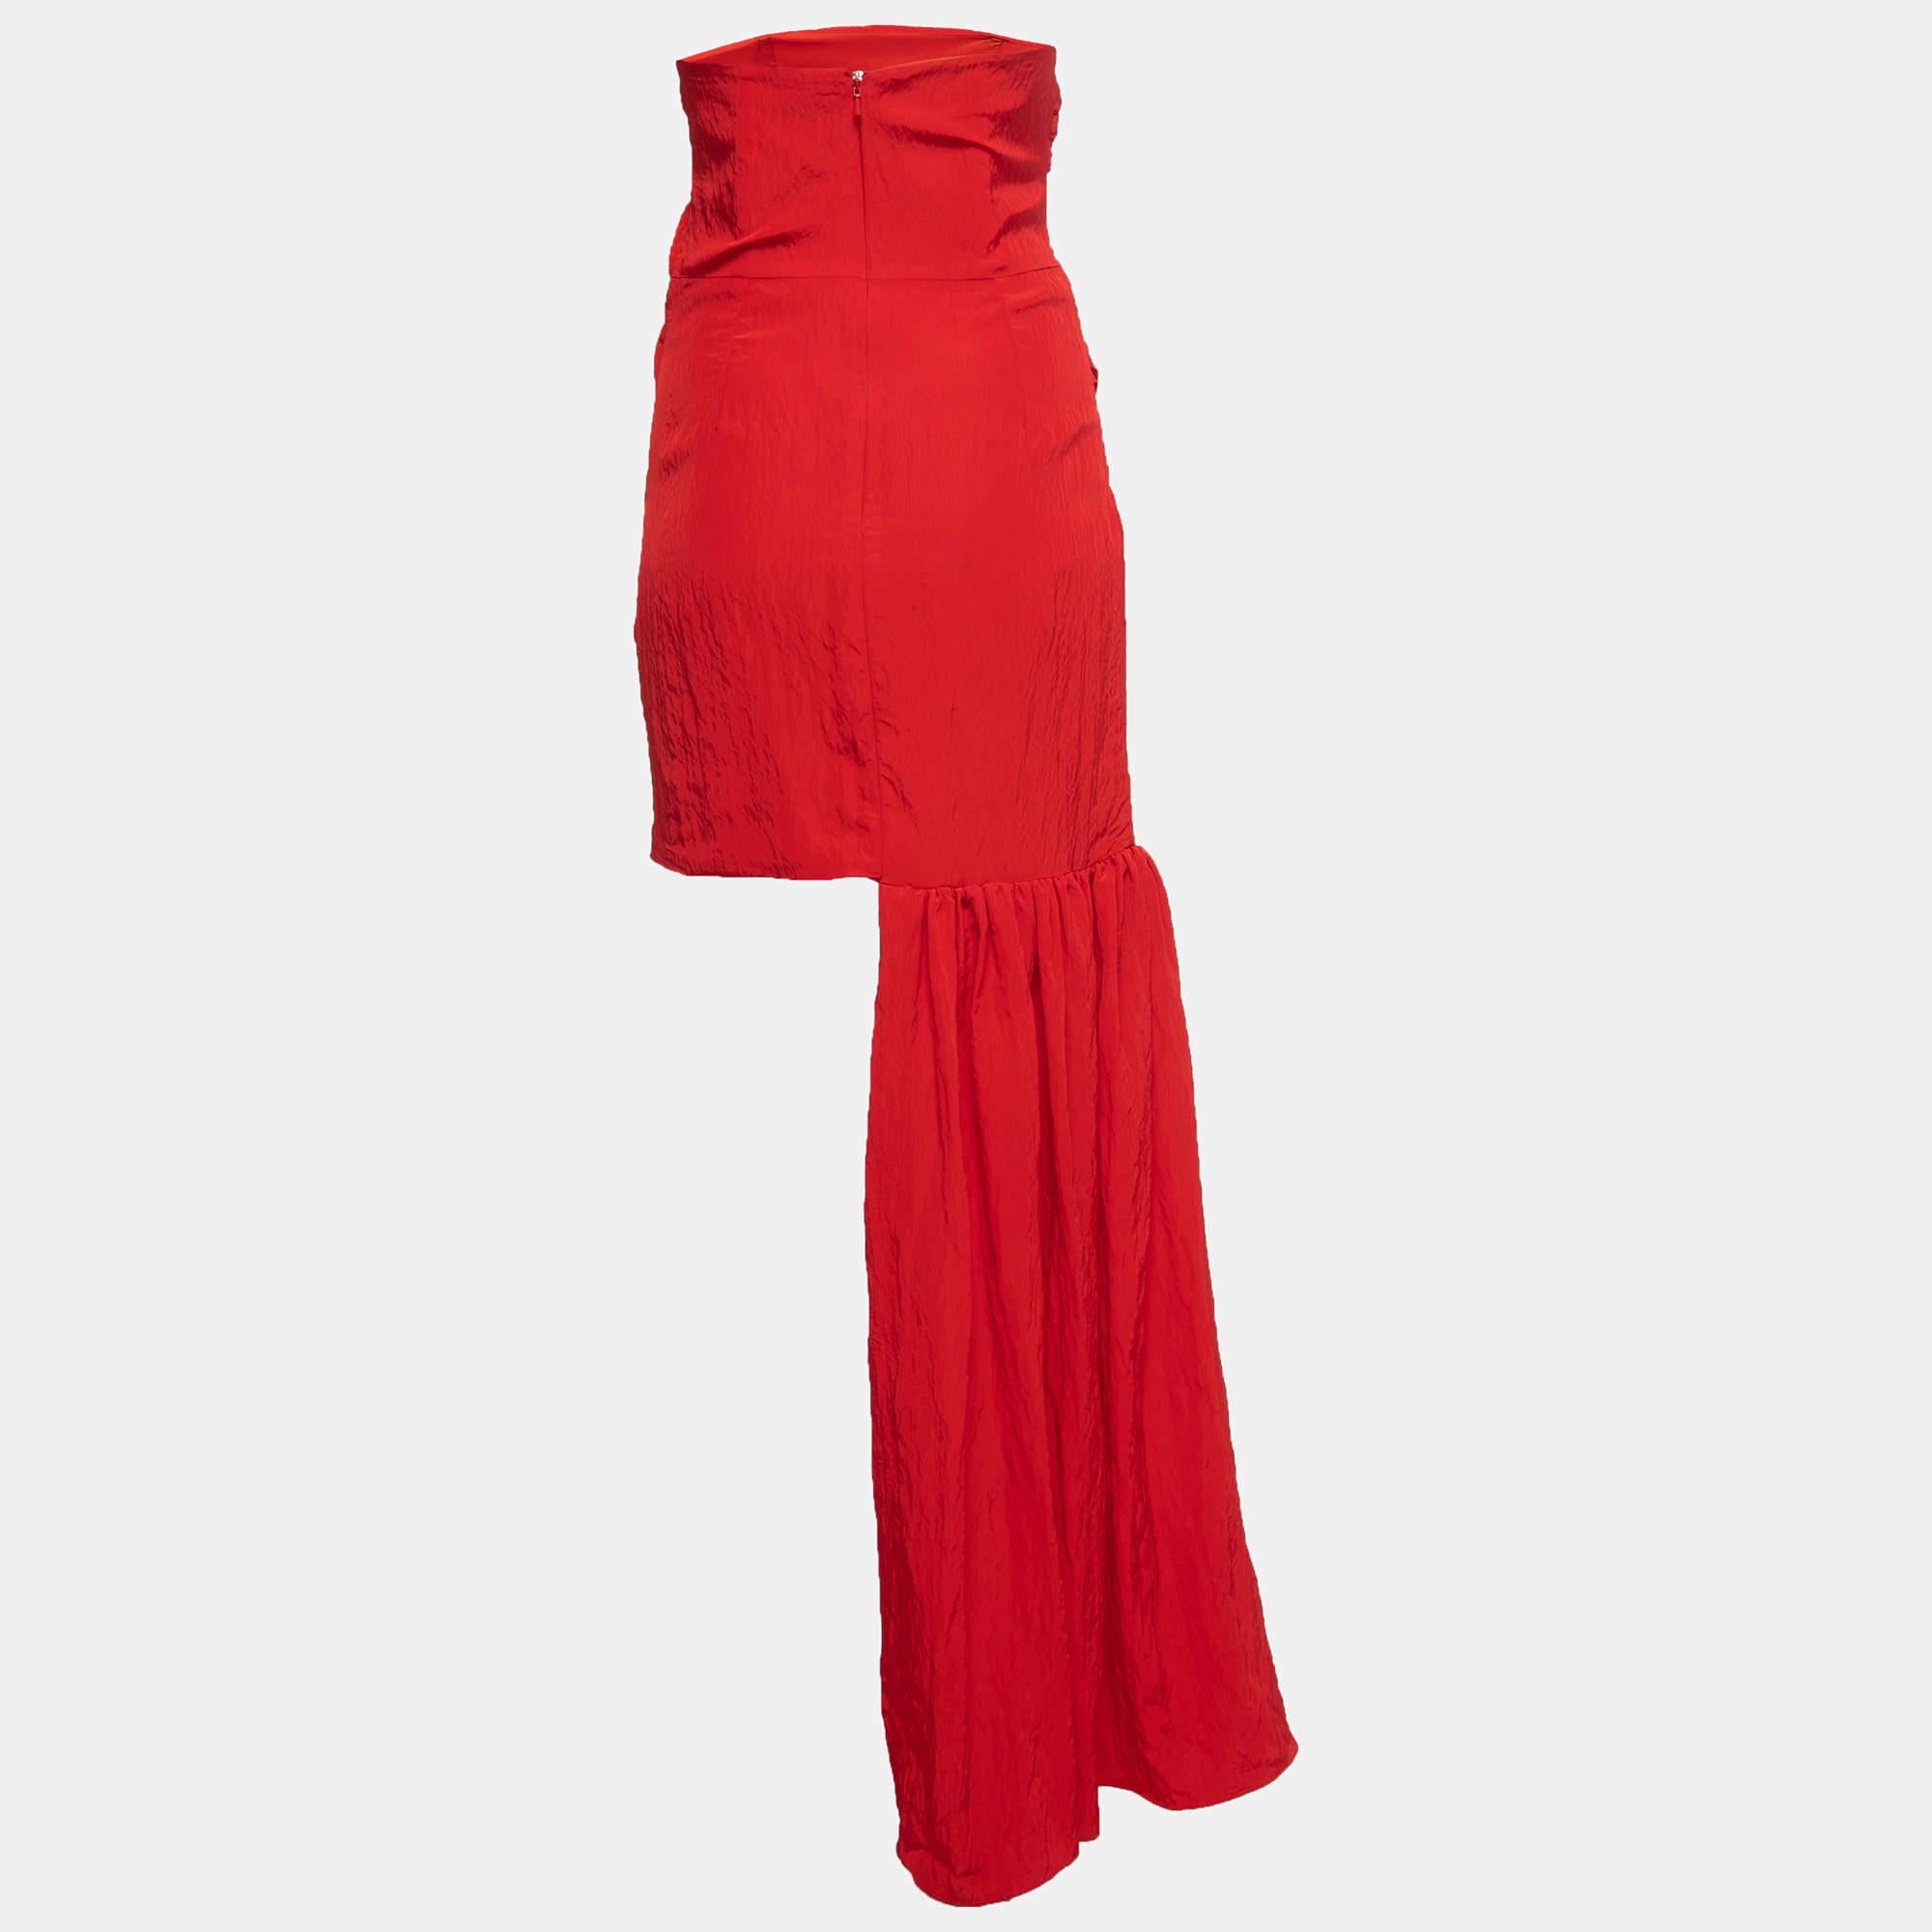 Dieses Kleid von David Koma ist ein schickes und stilvolles Kleidungsstück, das Eleganz und Raffinesse ausstrahlt. Mit seinem eleganten Design, der schmeichelhaften Silhouette und der hochwertigen Verarbeitung ist dieses Kleid perfekt für jeden